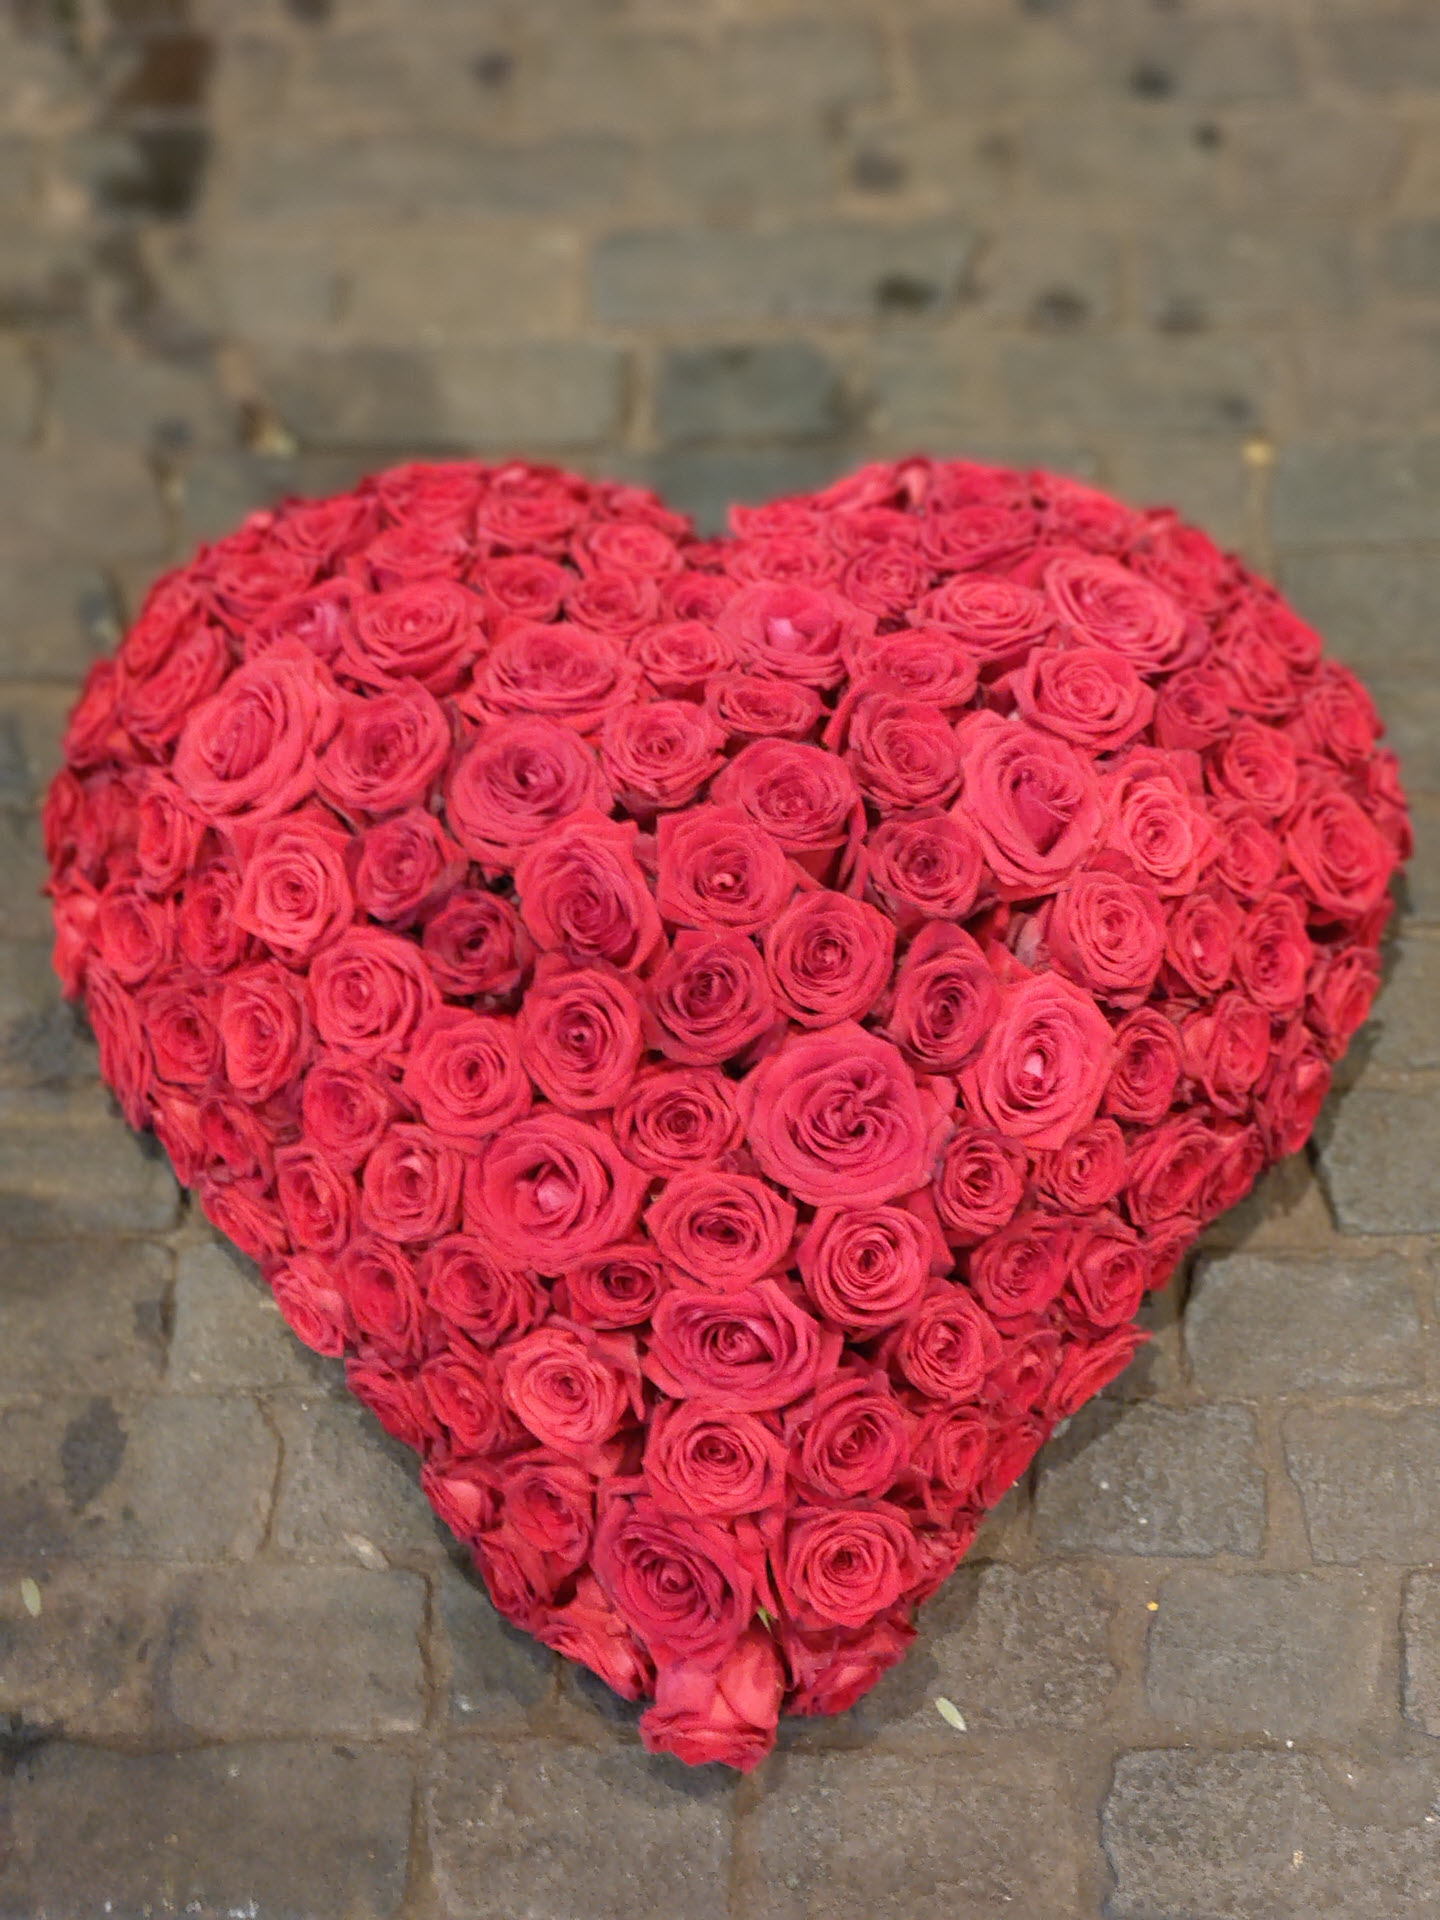 Bloemsierkunst Groeneveld rouwboeket, rouwstuk in hartvorm